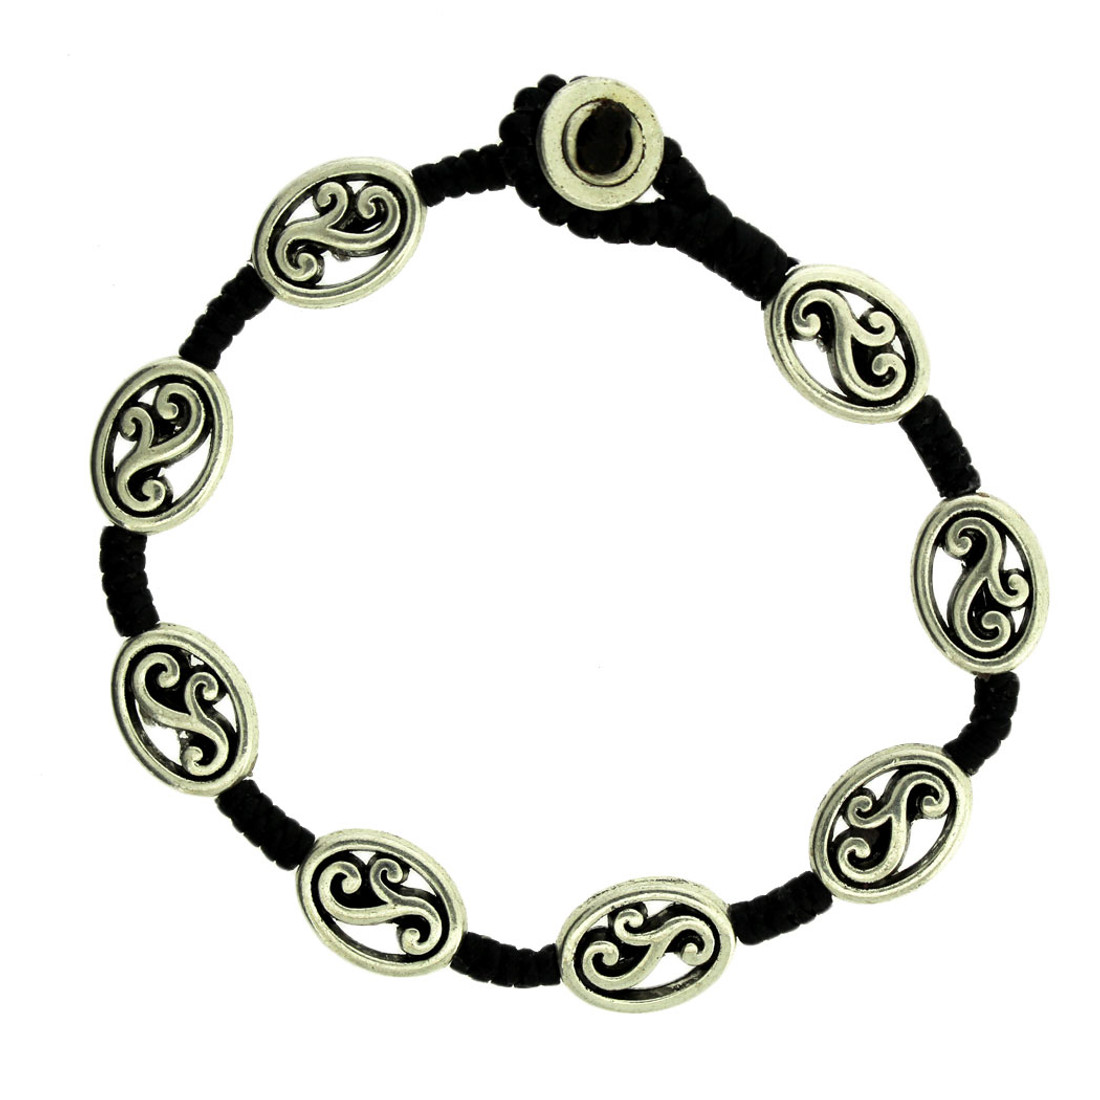 Swirl Design Beaded Silver Alloy Bracelet Wrist Jewelry Waxed Linen Wristband